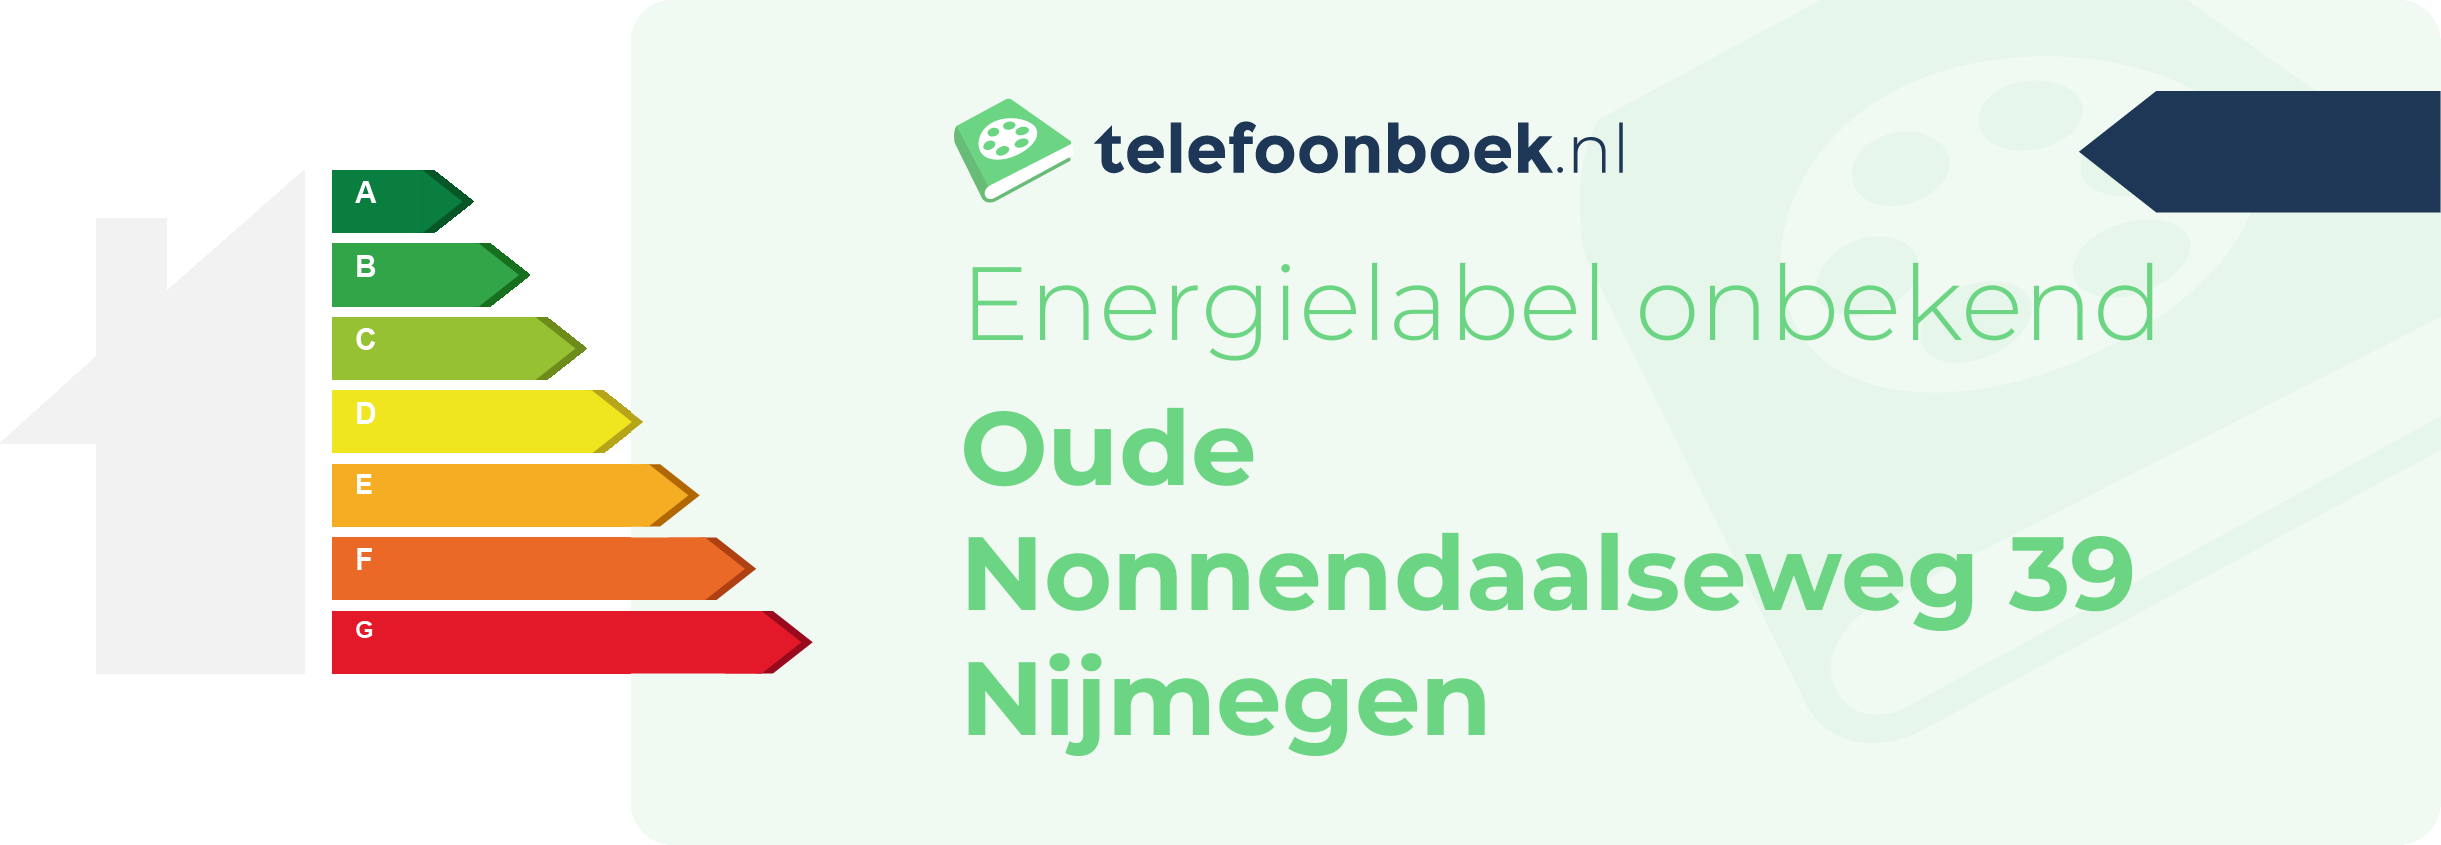 Energielabel Oude Nonnendaalseweg 39 Nijmegen